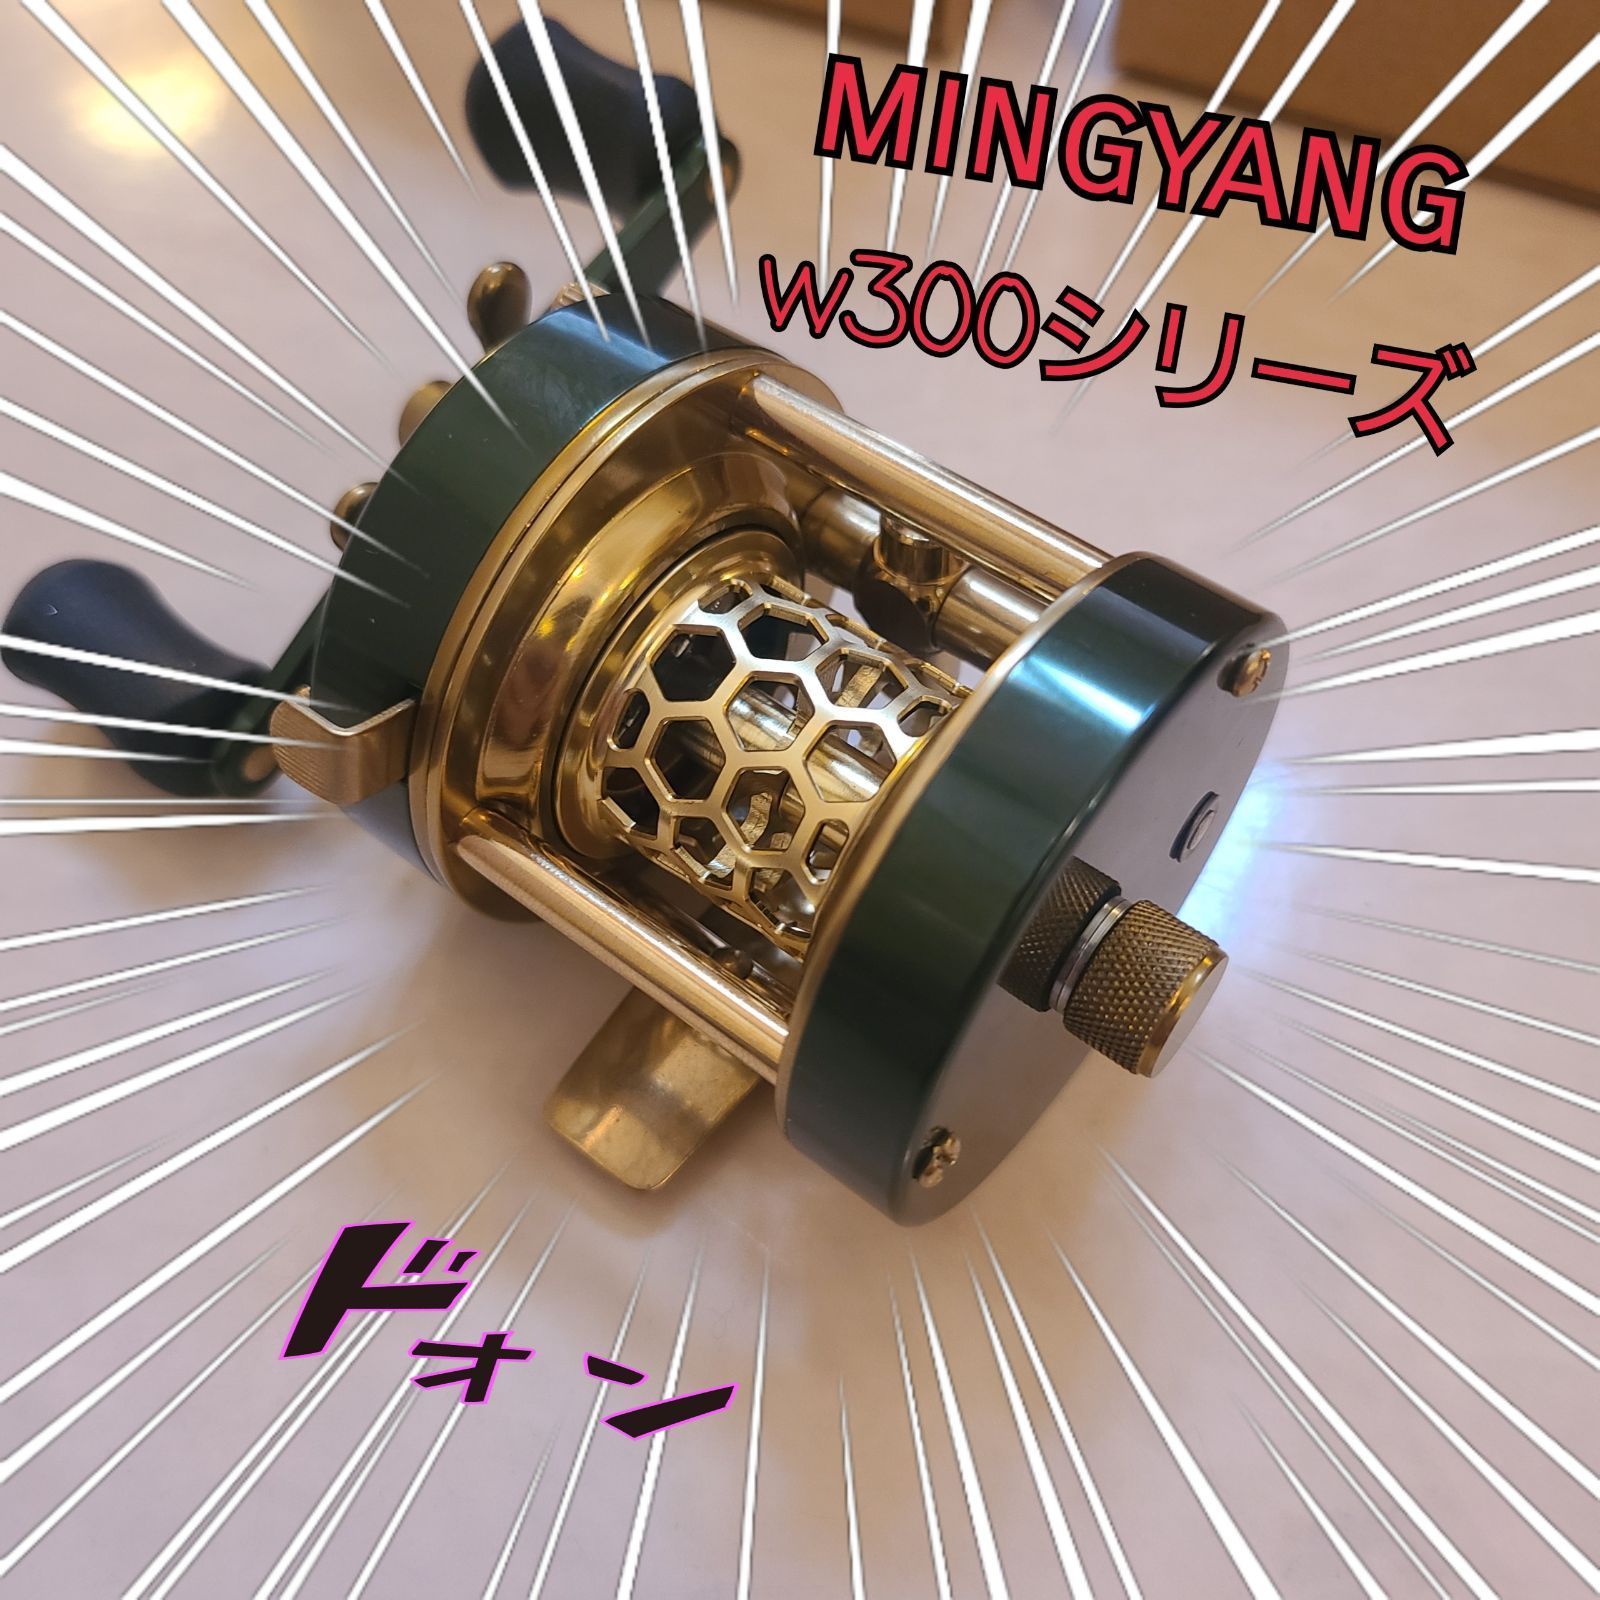 明洋(mingyang) w300シリーズ 緑(金)ノーマルハンドルver - メルカリ